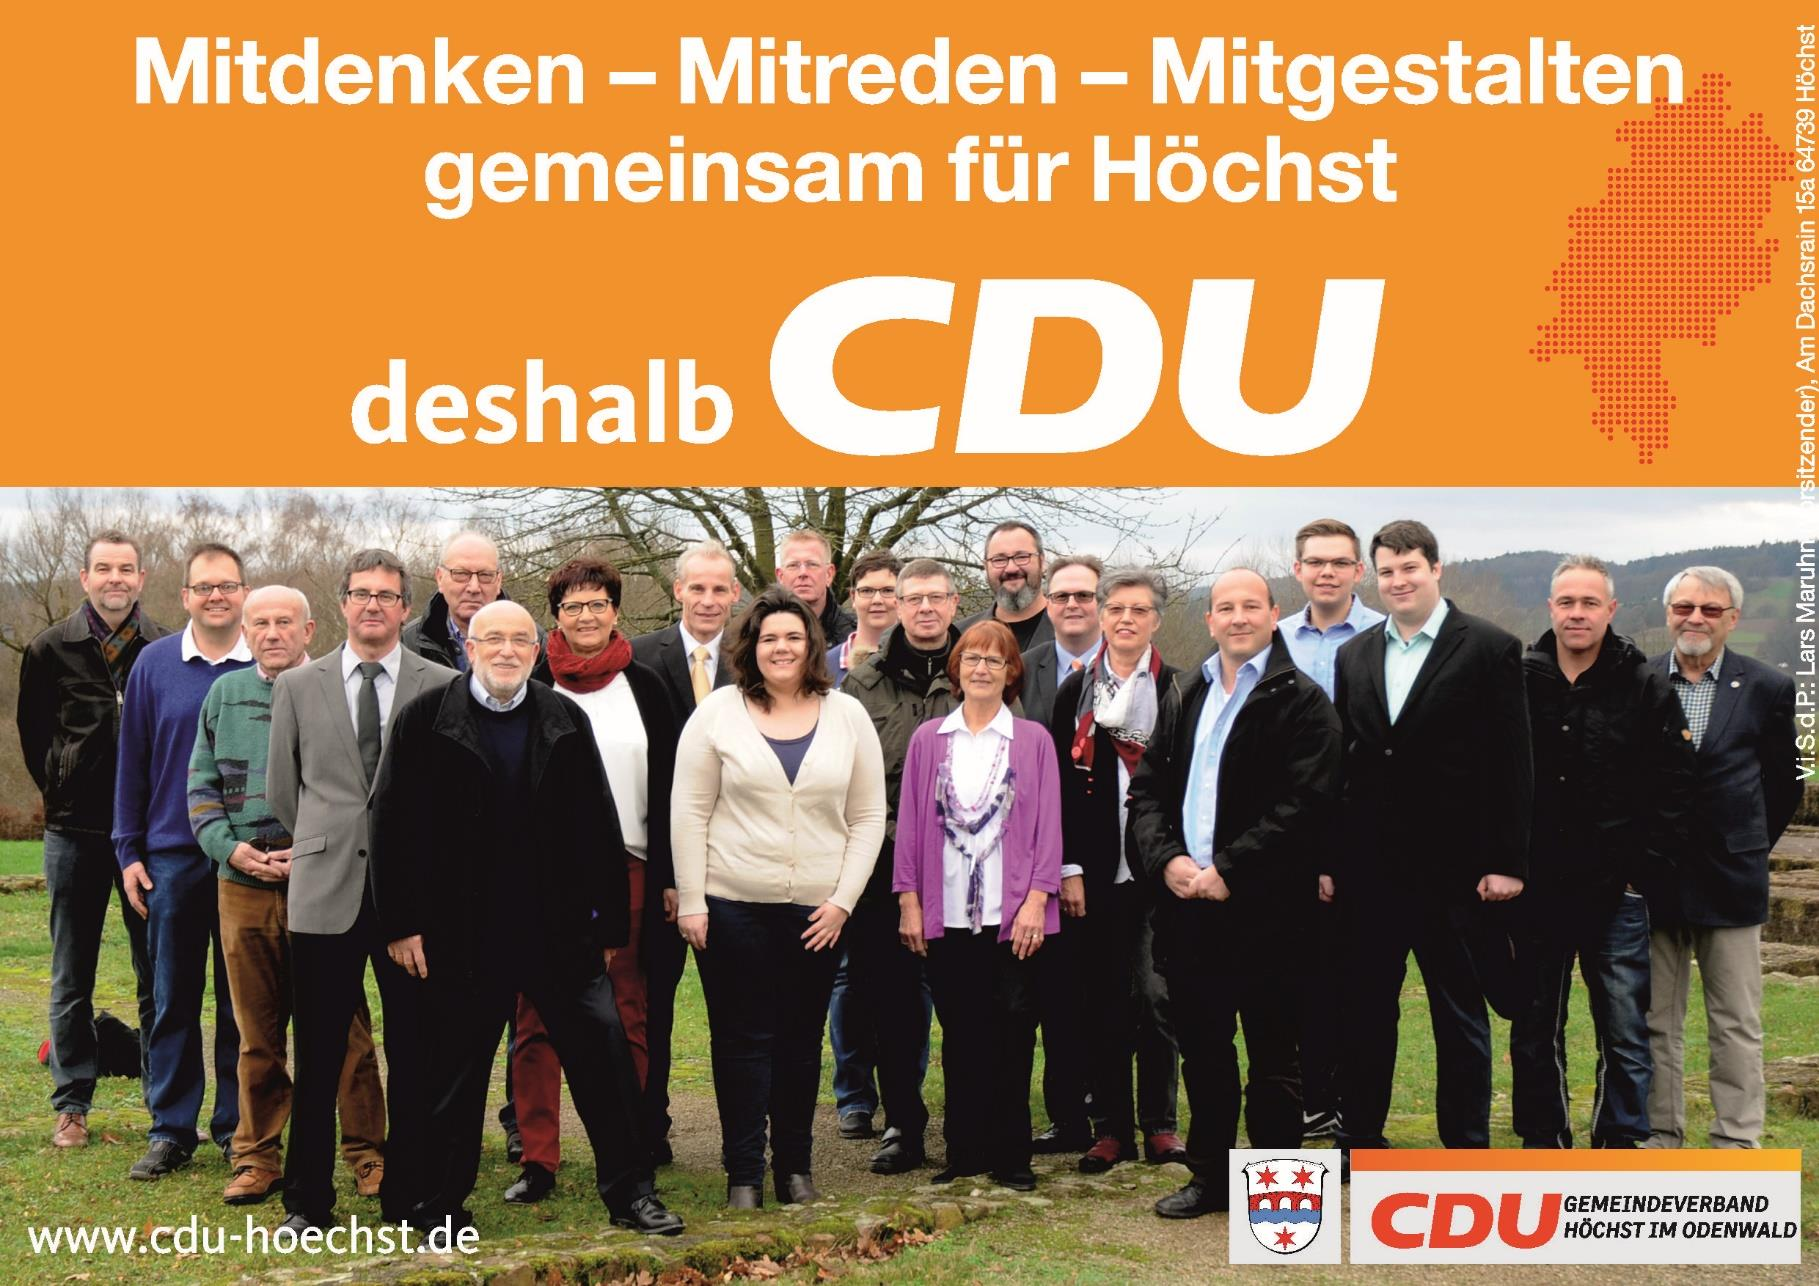 Kommunalwahlprogramm der CDU Höchst 2016 bis 2021 Mitdenken Mitreden Mitgestalten.